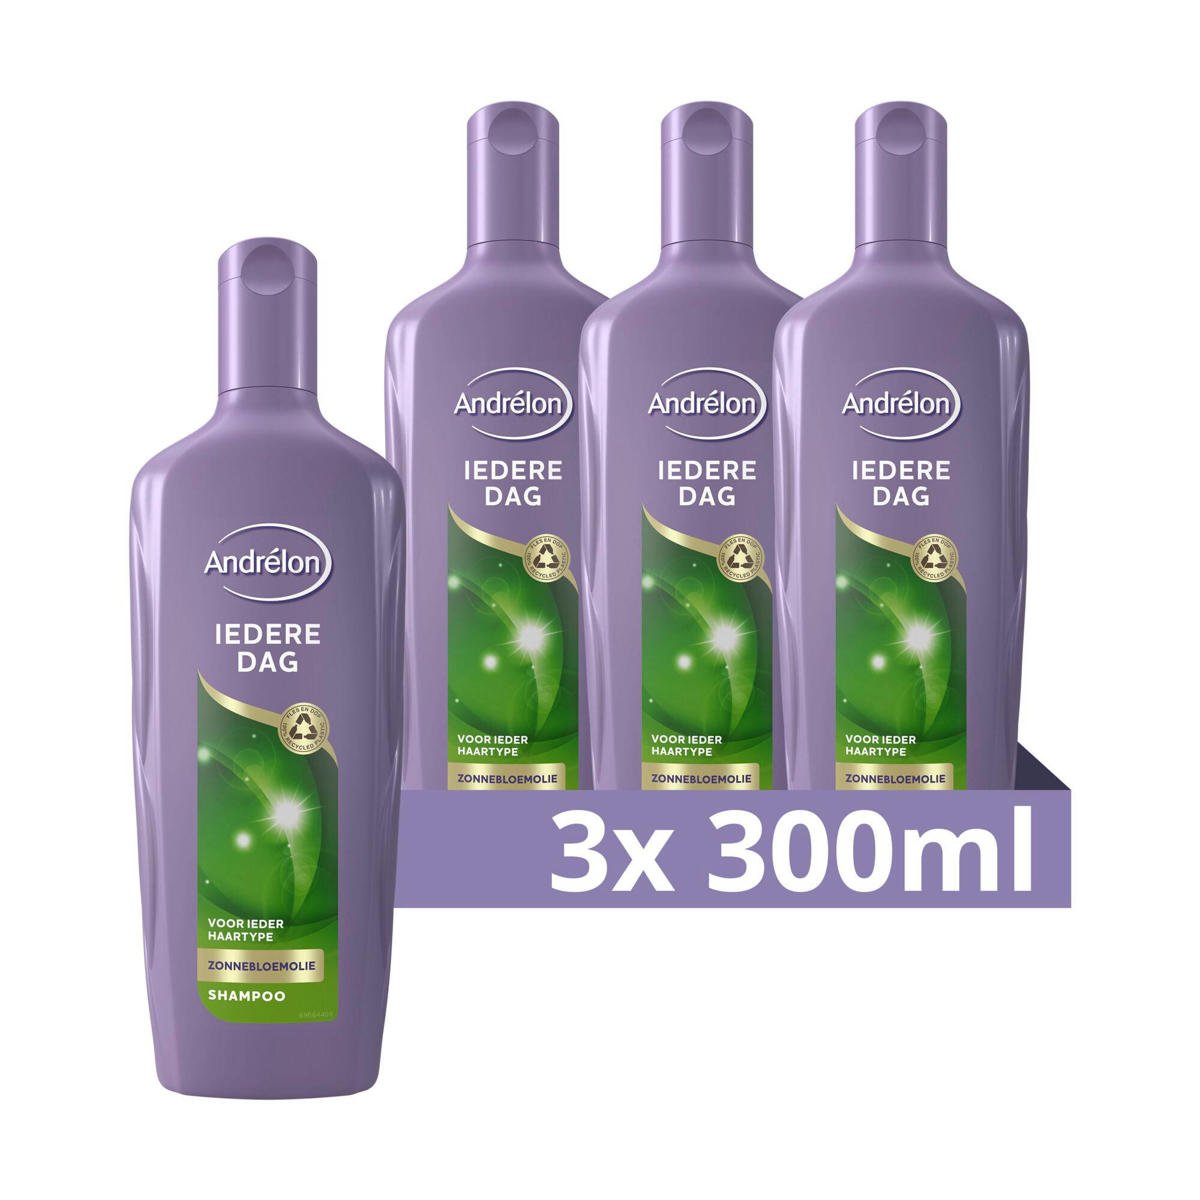 Overvloed zelfmoord Zie insecten Andrélon Iedere Dag shampoo - 3 x 300 ml - voordeelverpakking | wehkamp